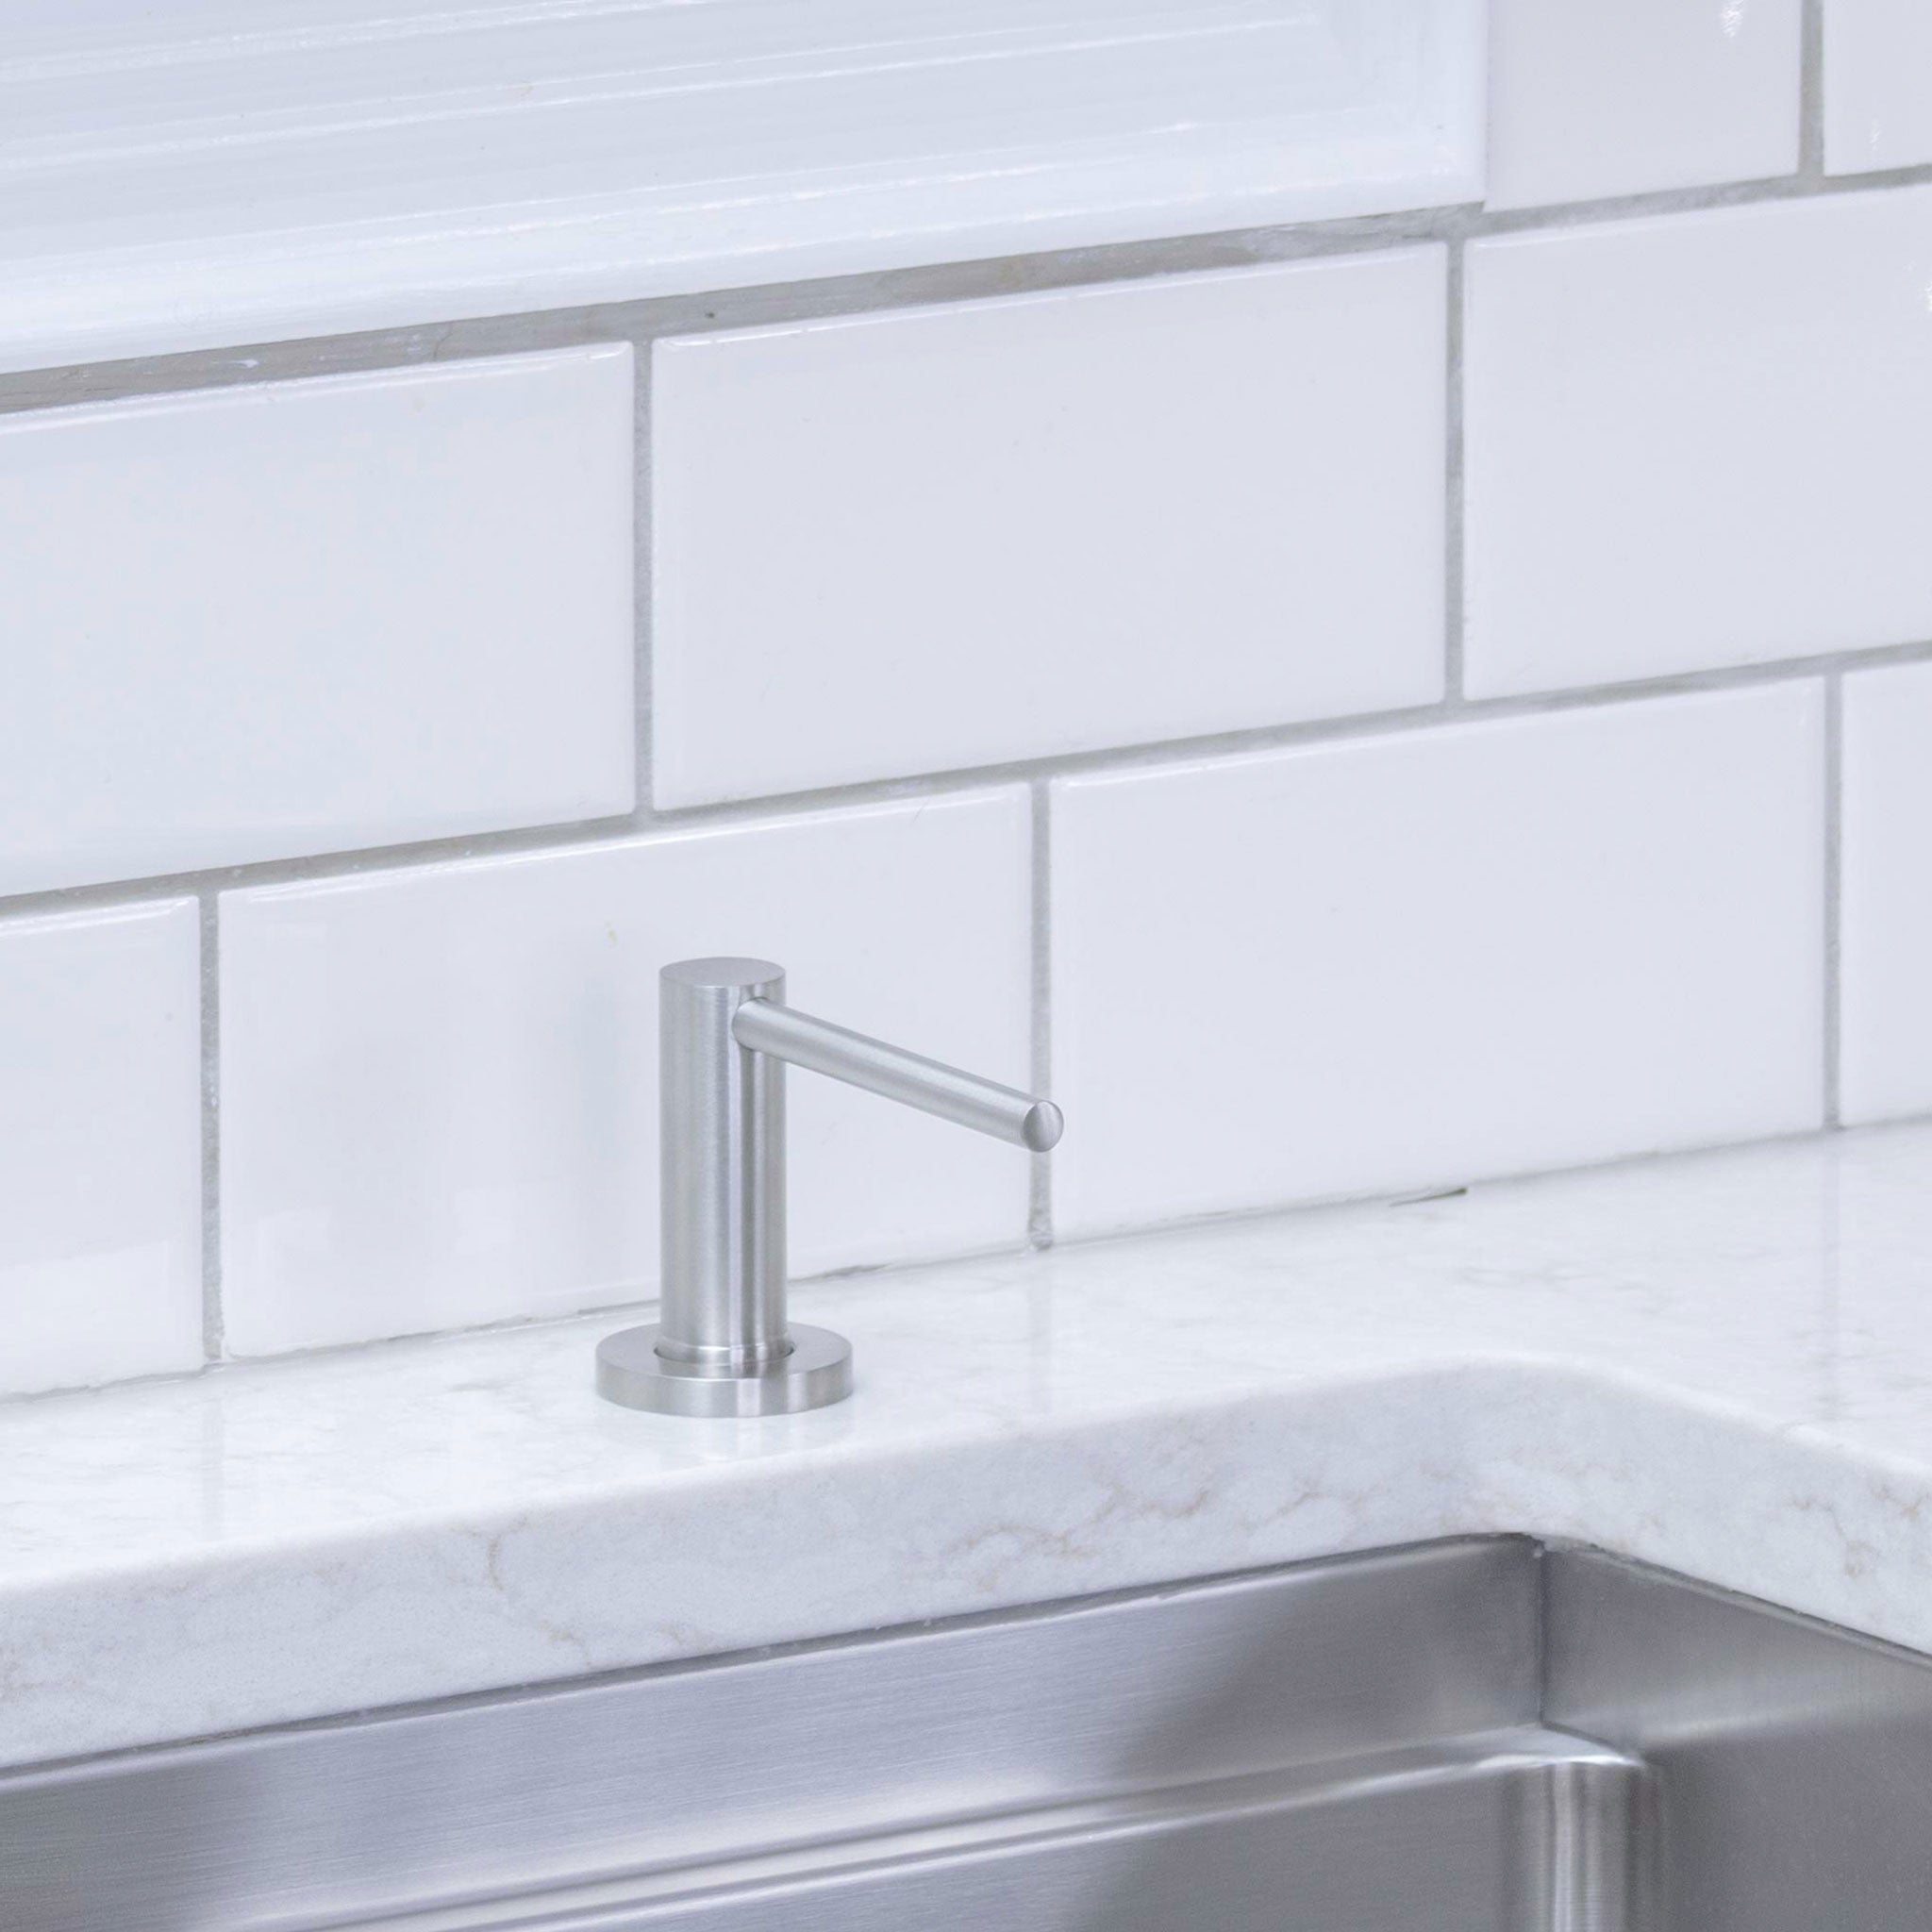 Snozzle - Liquid Dish Soap Dispenser – Create Good Sinks